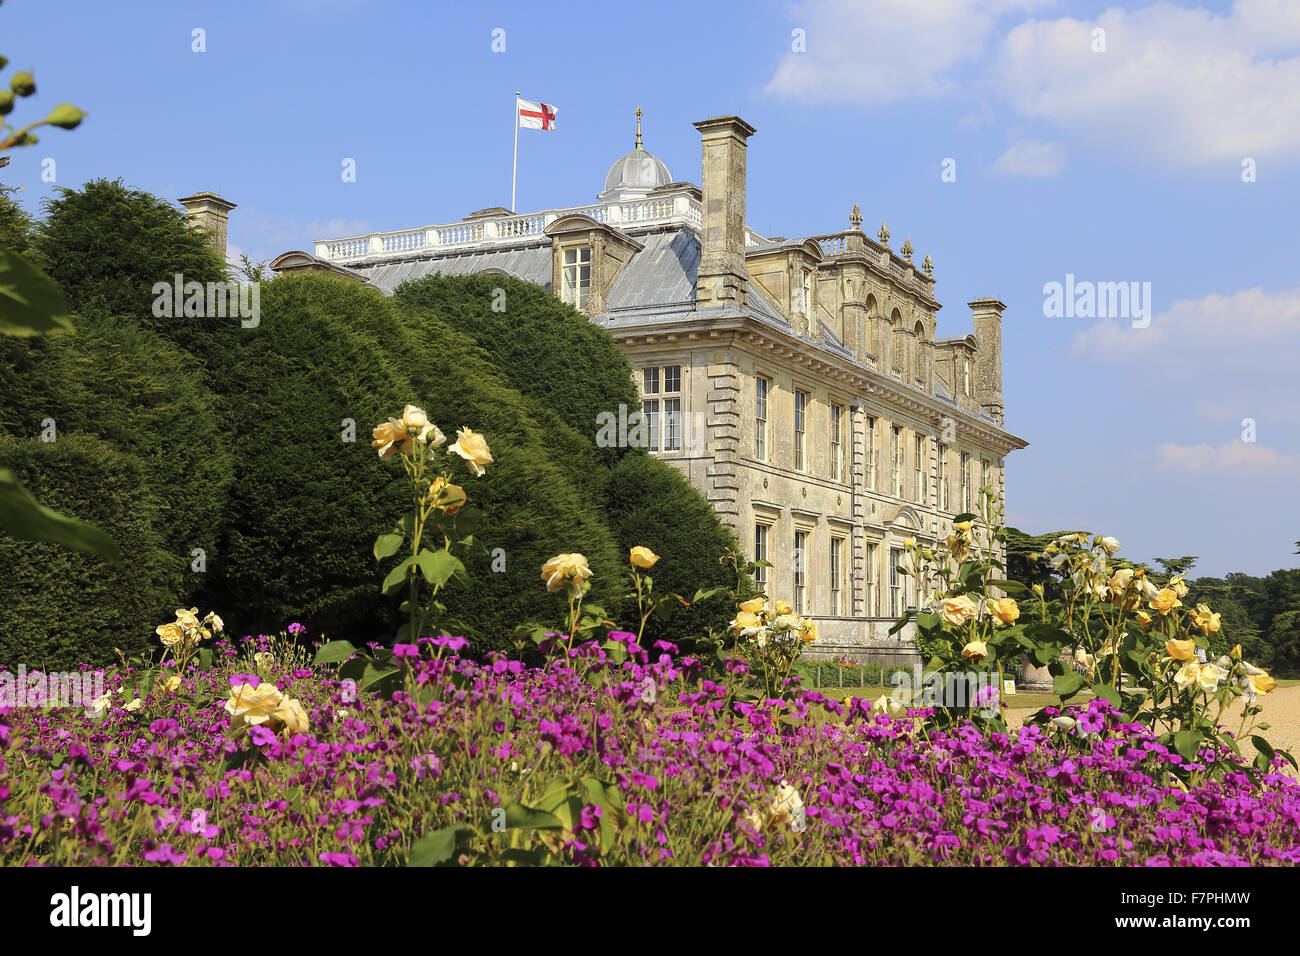 Vue de la façade sud de Kingston Lacy, Dorset, avec des fleurs d'été vu fleurir dans l'avant-plan. Banque D'Images